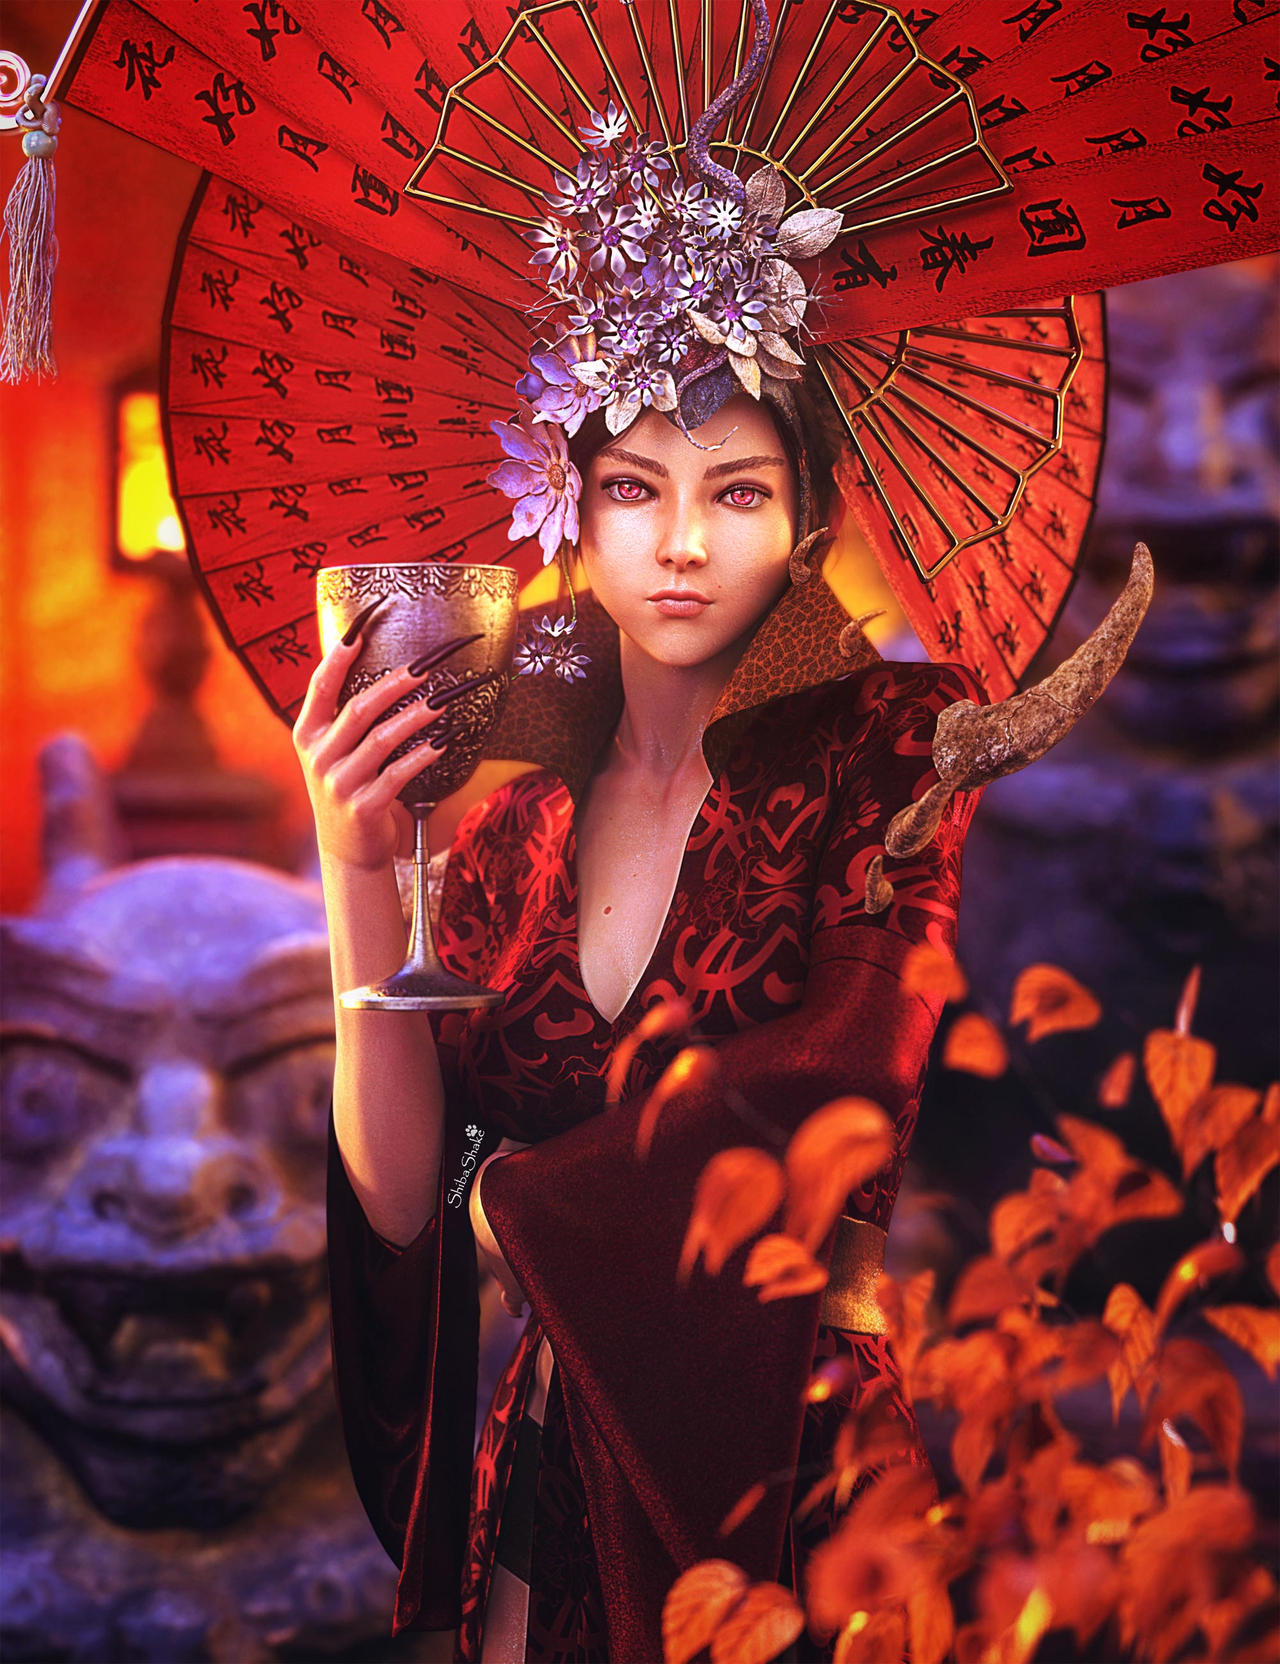 Ilustración de mujeres - Página 6 Red__asian_demon_woman_fantasy_art__daz_studio_by_shibashake_ddnus8o-fullview.jpg?token=eyJ0eXAiOiJKV1QiLCJhbGciOiJIUzI1NiJ9.eyJzdWIiOiJ1cm46YXBwOjdlMGQxODg5ODIyNjQzNzNhNWYwZDQxNWVhMGQyNmUwIiwiaXNzIjoidXJuOmFwcDo3ZTBkMTg4OTgyMjY0MzczYTVmMGQ0MTVlYTBkMjZlMCIsIm9iaiI6W1t7ImhlaWdodCI6Ijw9MTY2NCIsInBhdGgiOiJcL2ZcL2I2NzhmZWI2LWRiNGQtNGEyNS04YzgzLWJjYTY5MTBjZmI2YlwvZGRudXM4by0xNjAwMGYxMy0wZTE4LTRiN2EtYWY1Mi1hOWYyZDZhMmM4ZjAuanBnIiwid2lkdGgiOiI8PTEyODAifV1dLCJhdWQiOlsidXJuOnNlcnZpY2U6aW1hZ2Uub3BlcmF0aW9ucyJdfQ